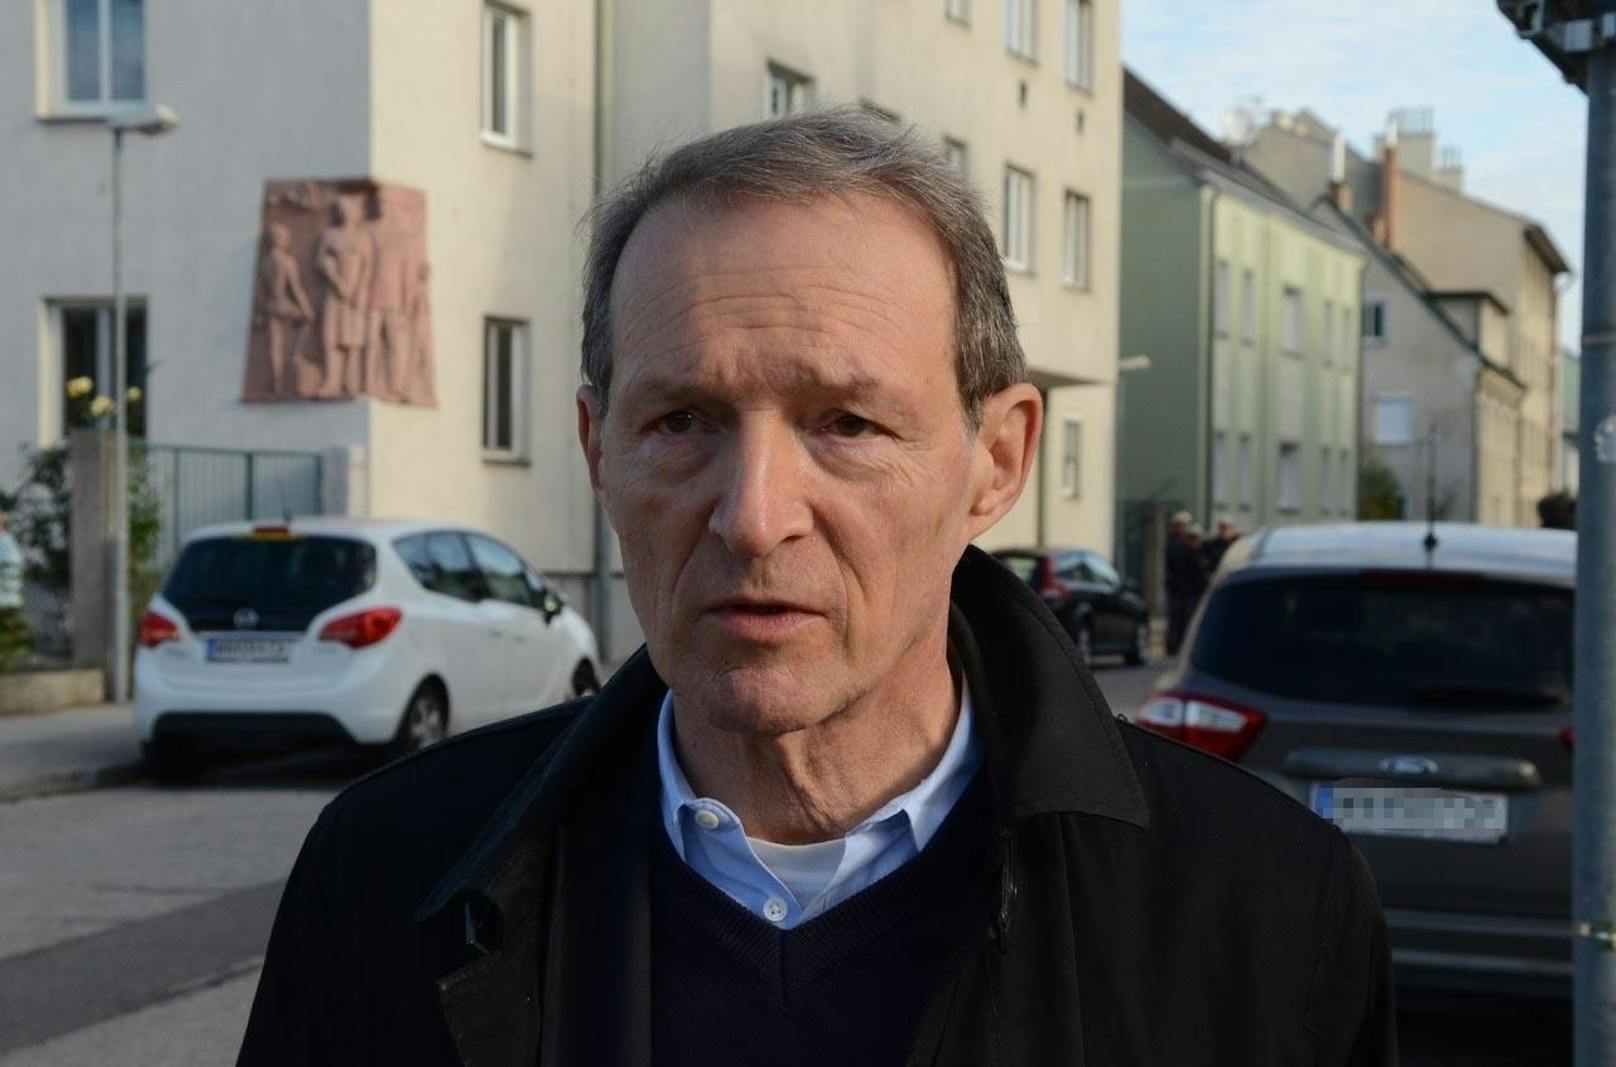 Anwalt Wolfgang Blaschitz übernahm die Verteidigung des Afghanen.